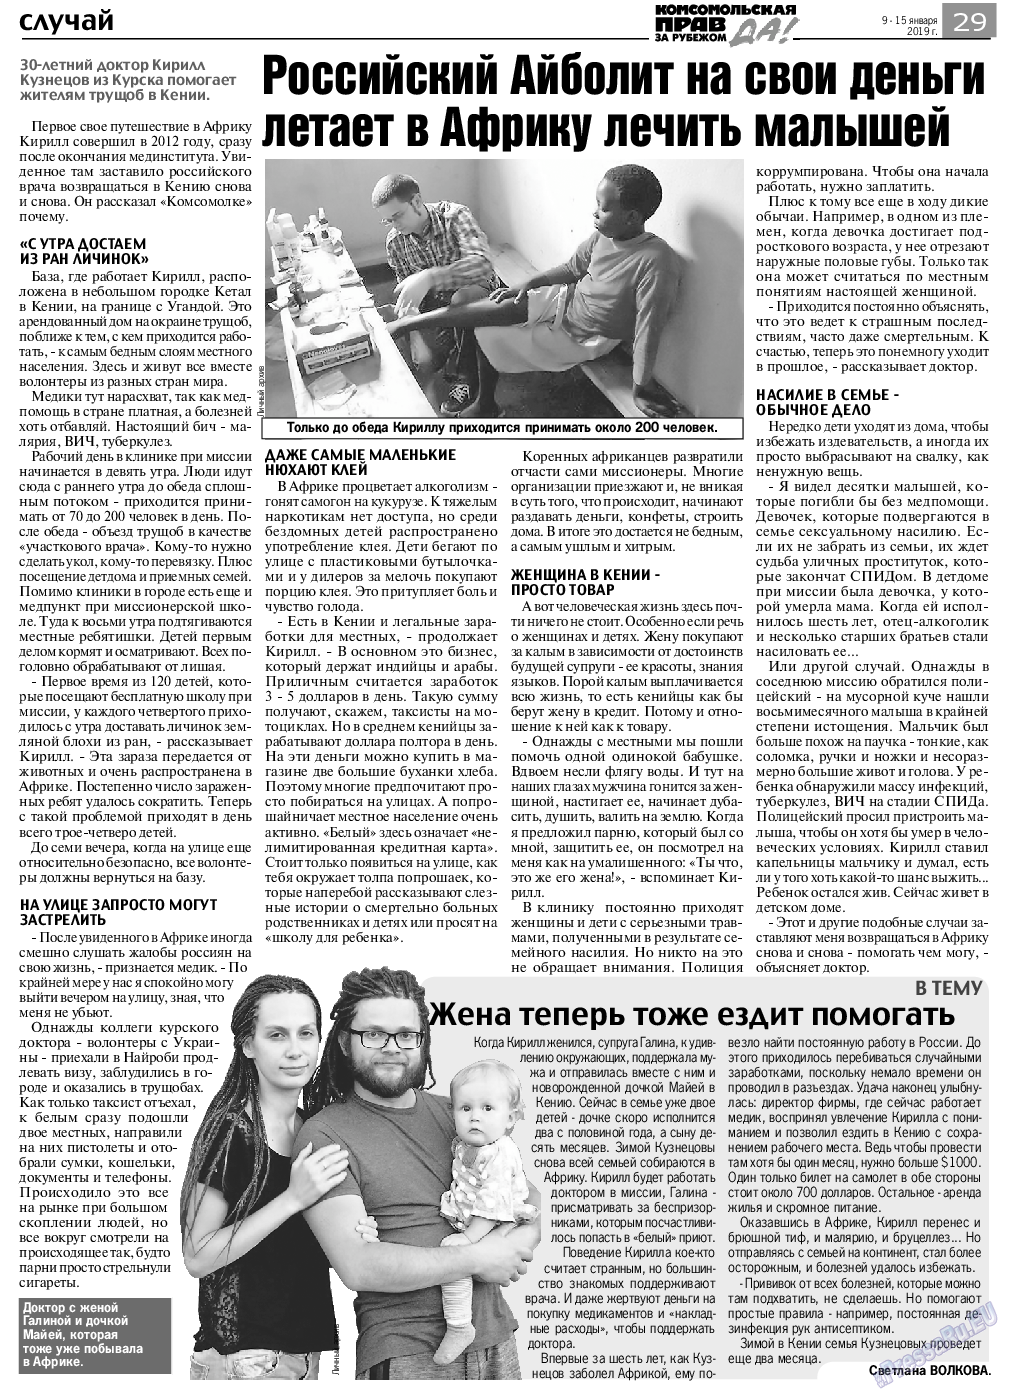 КП в Европе (газета). 2019 год, номер 2, стр. 29